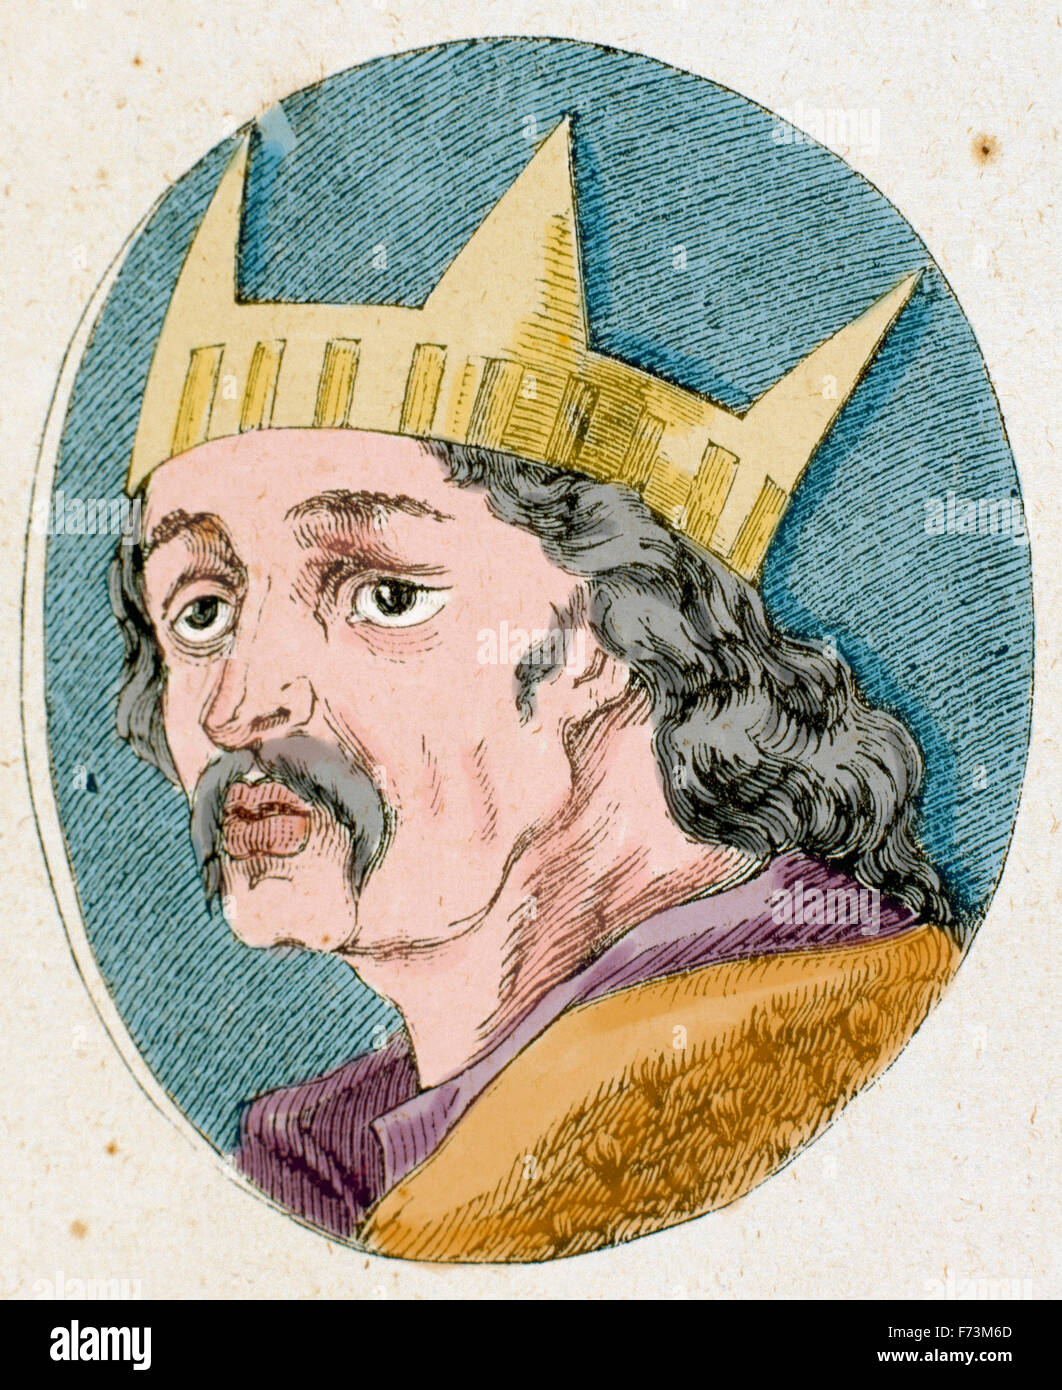 Alfons VI. von León und Kastilien (1040-1109). Der tapfere oder der Valiant genannt. Porträt. Gravur. Farbige. Stockfoto